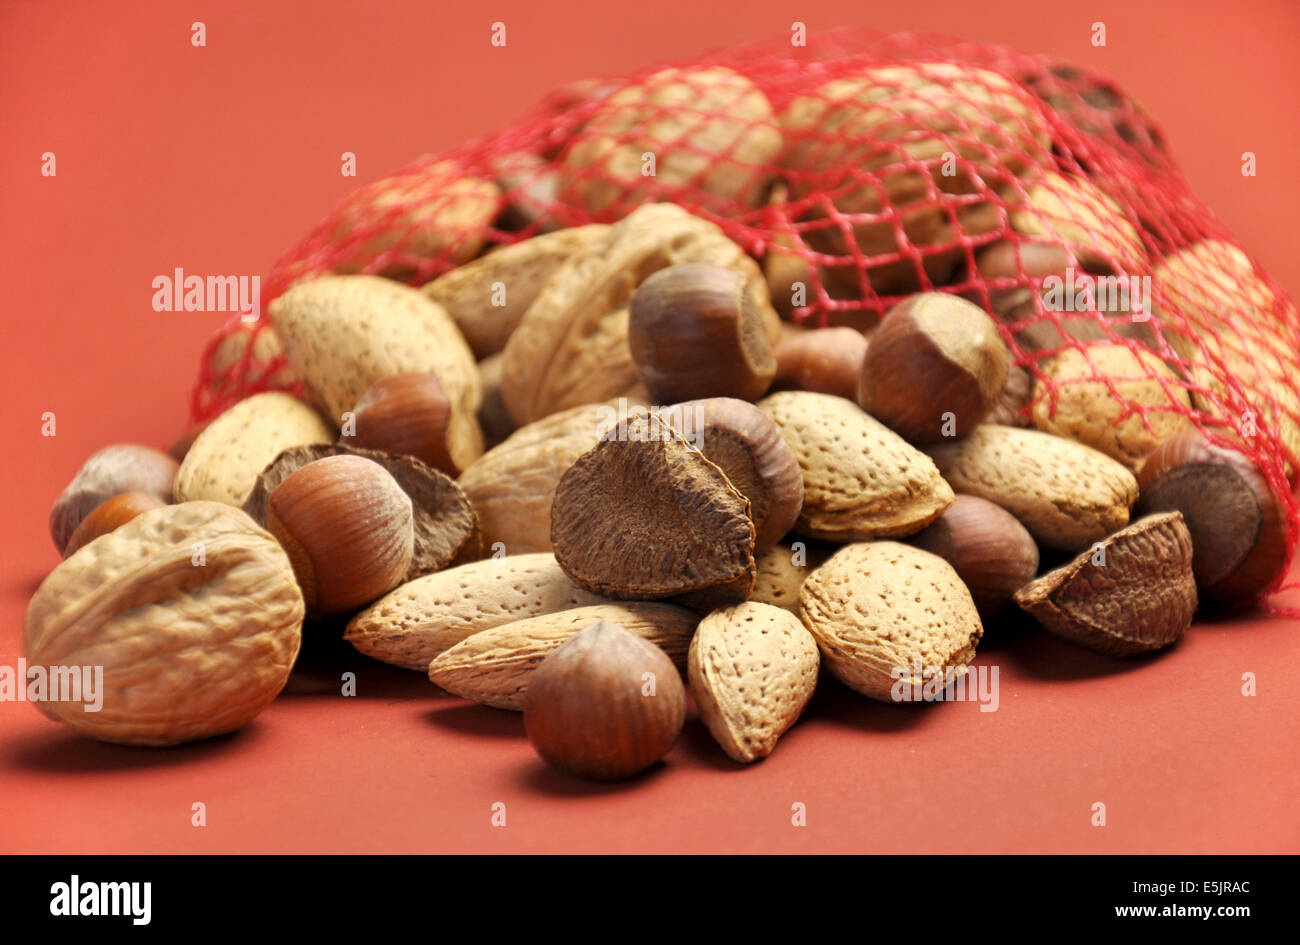 Tasche köstliche gesunde Nüsse - Walnüsse, Mandeln, Haselnüsse und Paranüsse Stockfoto